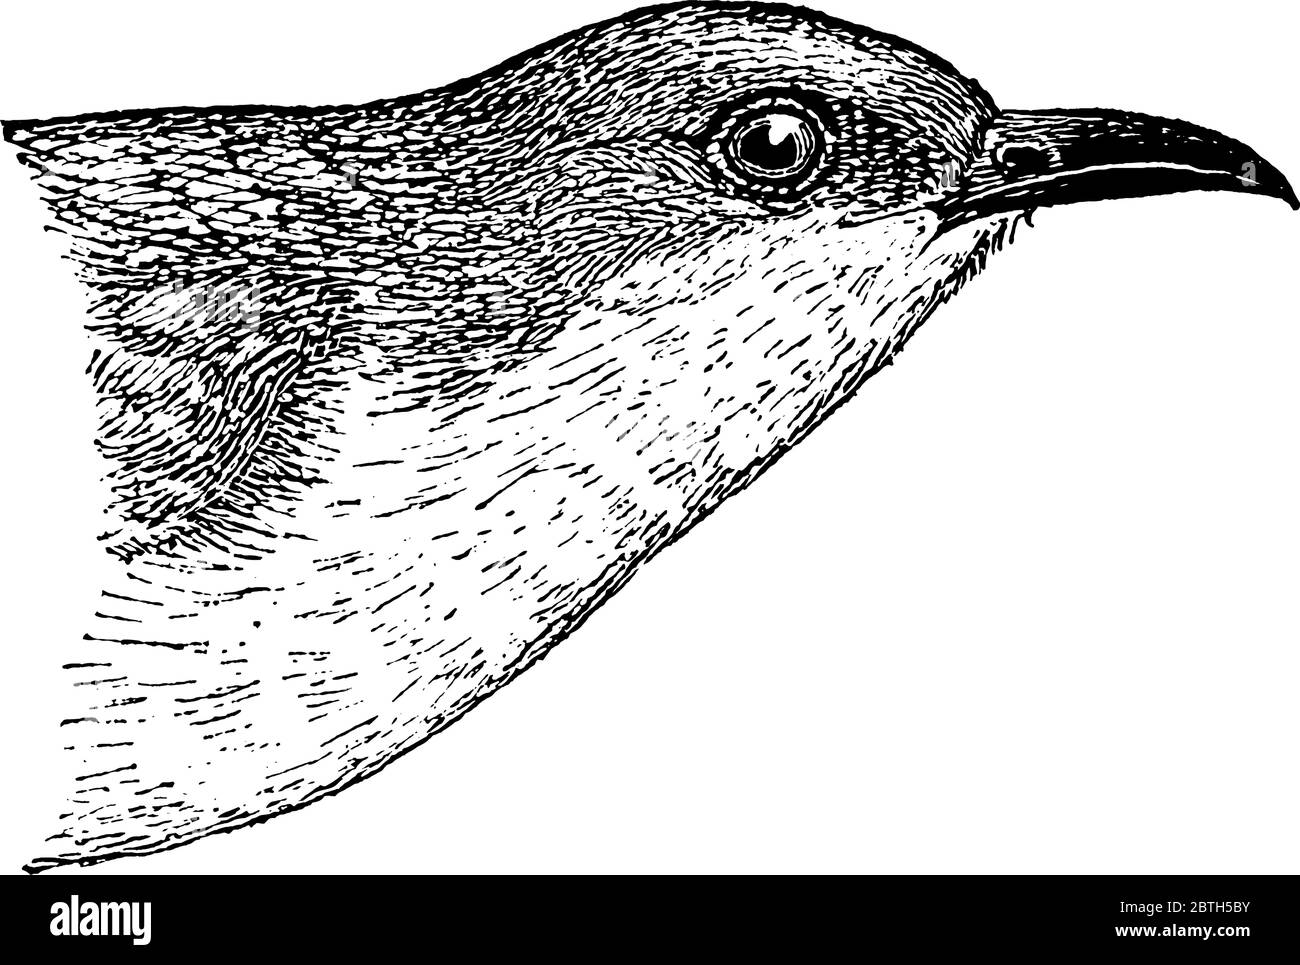 Cuckoo à bec noir habituellement avec un anneau rouge autour de l'oeil, dessin de ligne vintage ou illustration de gravure. Illustration de Vecteur